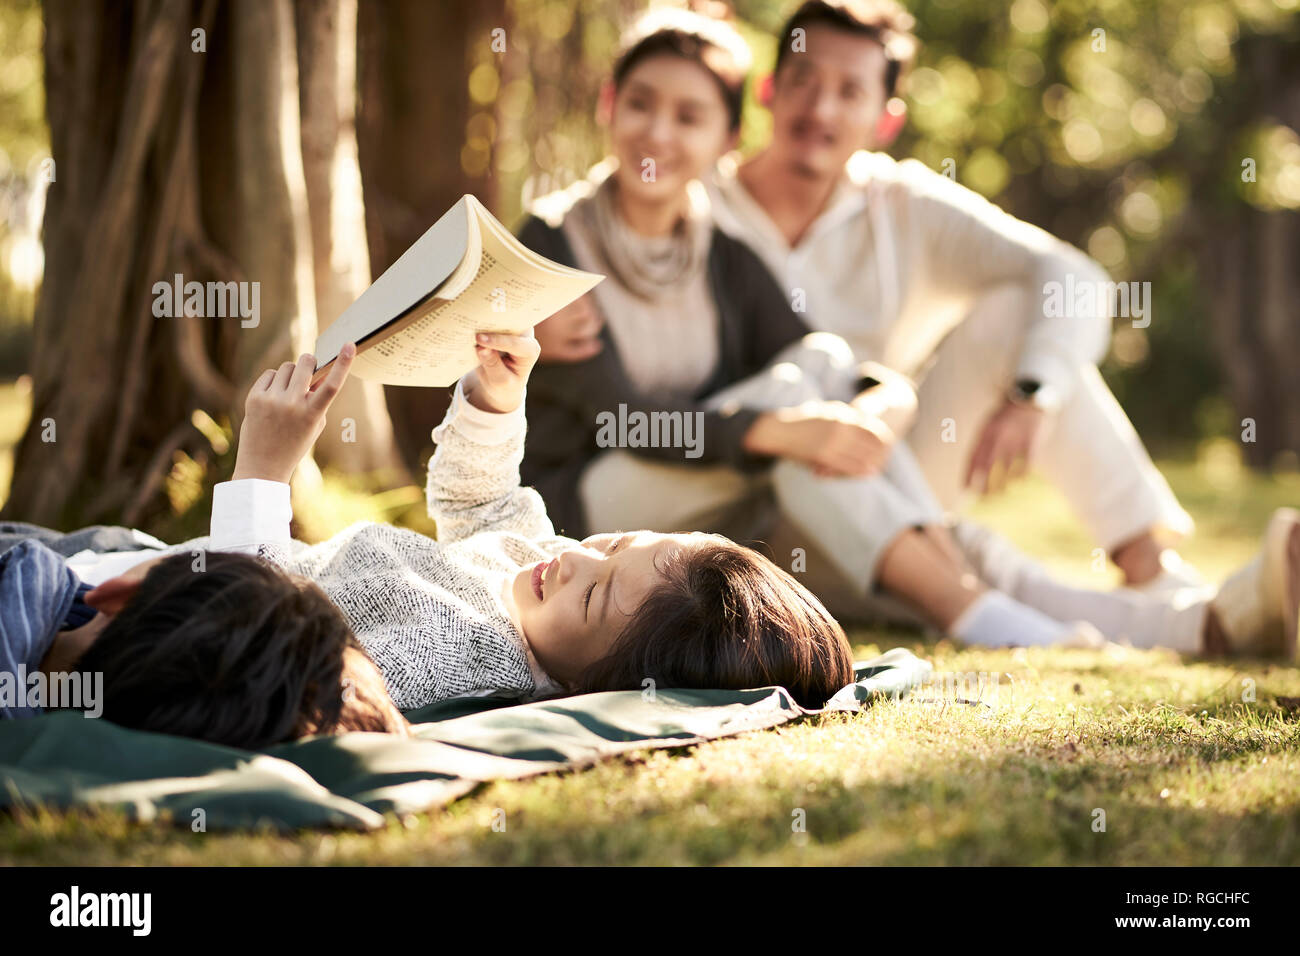 Deux enfants asiatiques little boy and girl having fun lying on grass avec les parents assis à regarder en arrière-plan, l'accent sur les enfants en premier plan. Banque D'Images